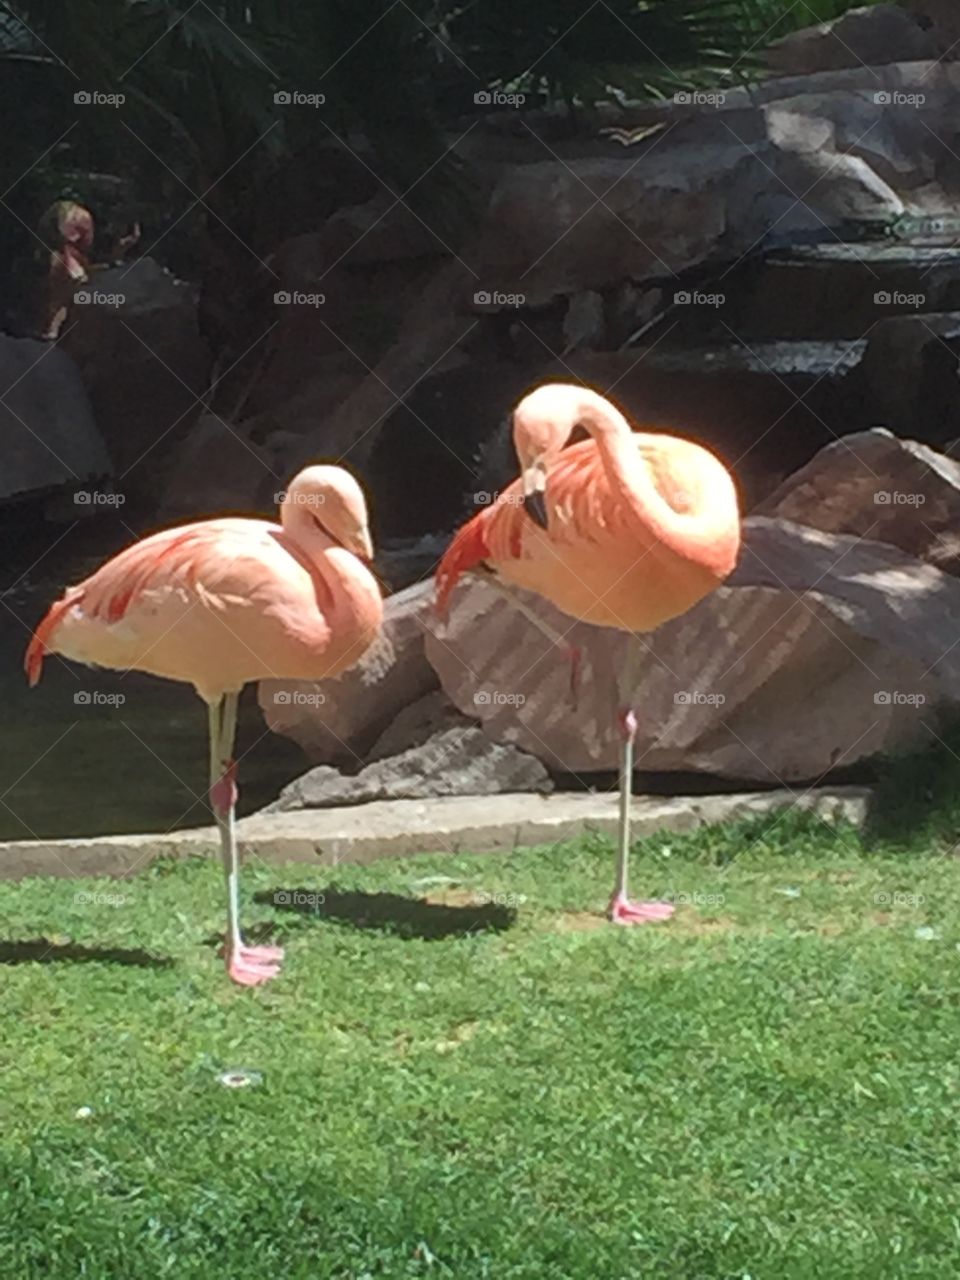 Two flamingos